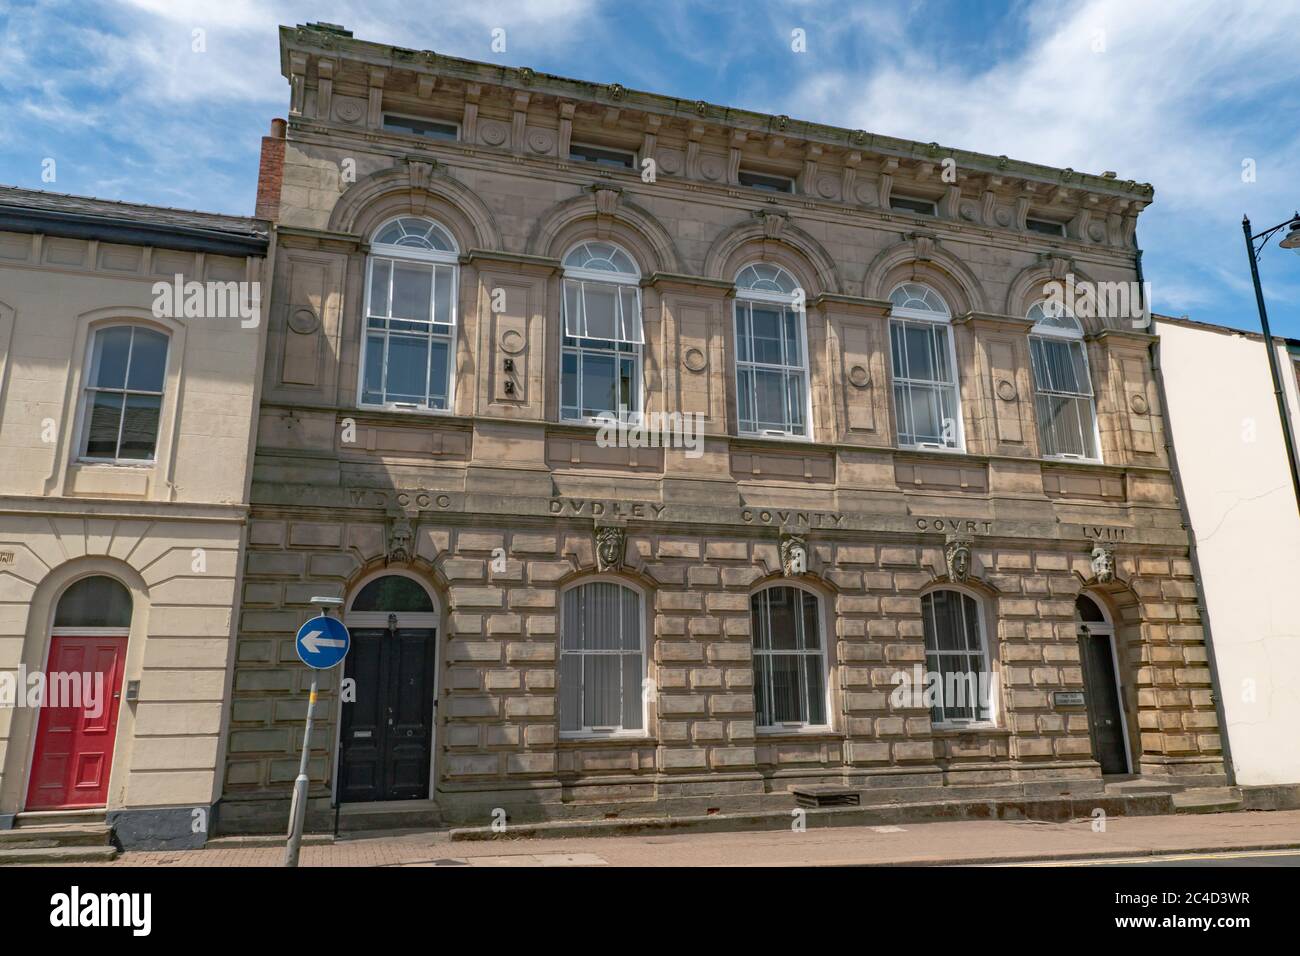 Le palais de justice de l'ancien comté, Priory Street, Dudley. West Midlands. ROYAUME-UNI Banque D'Images